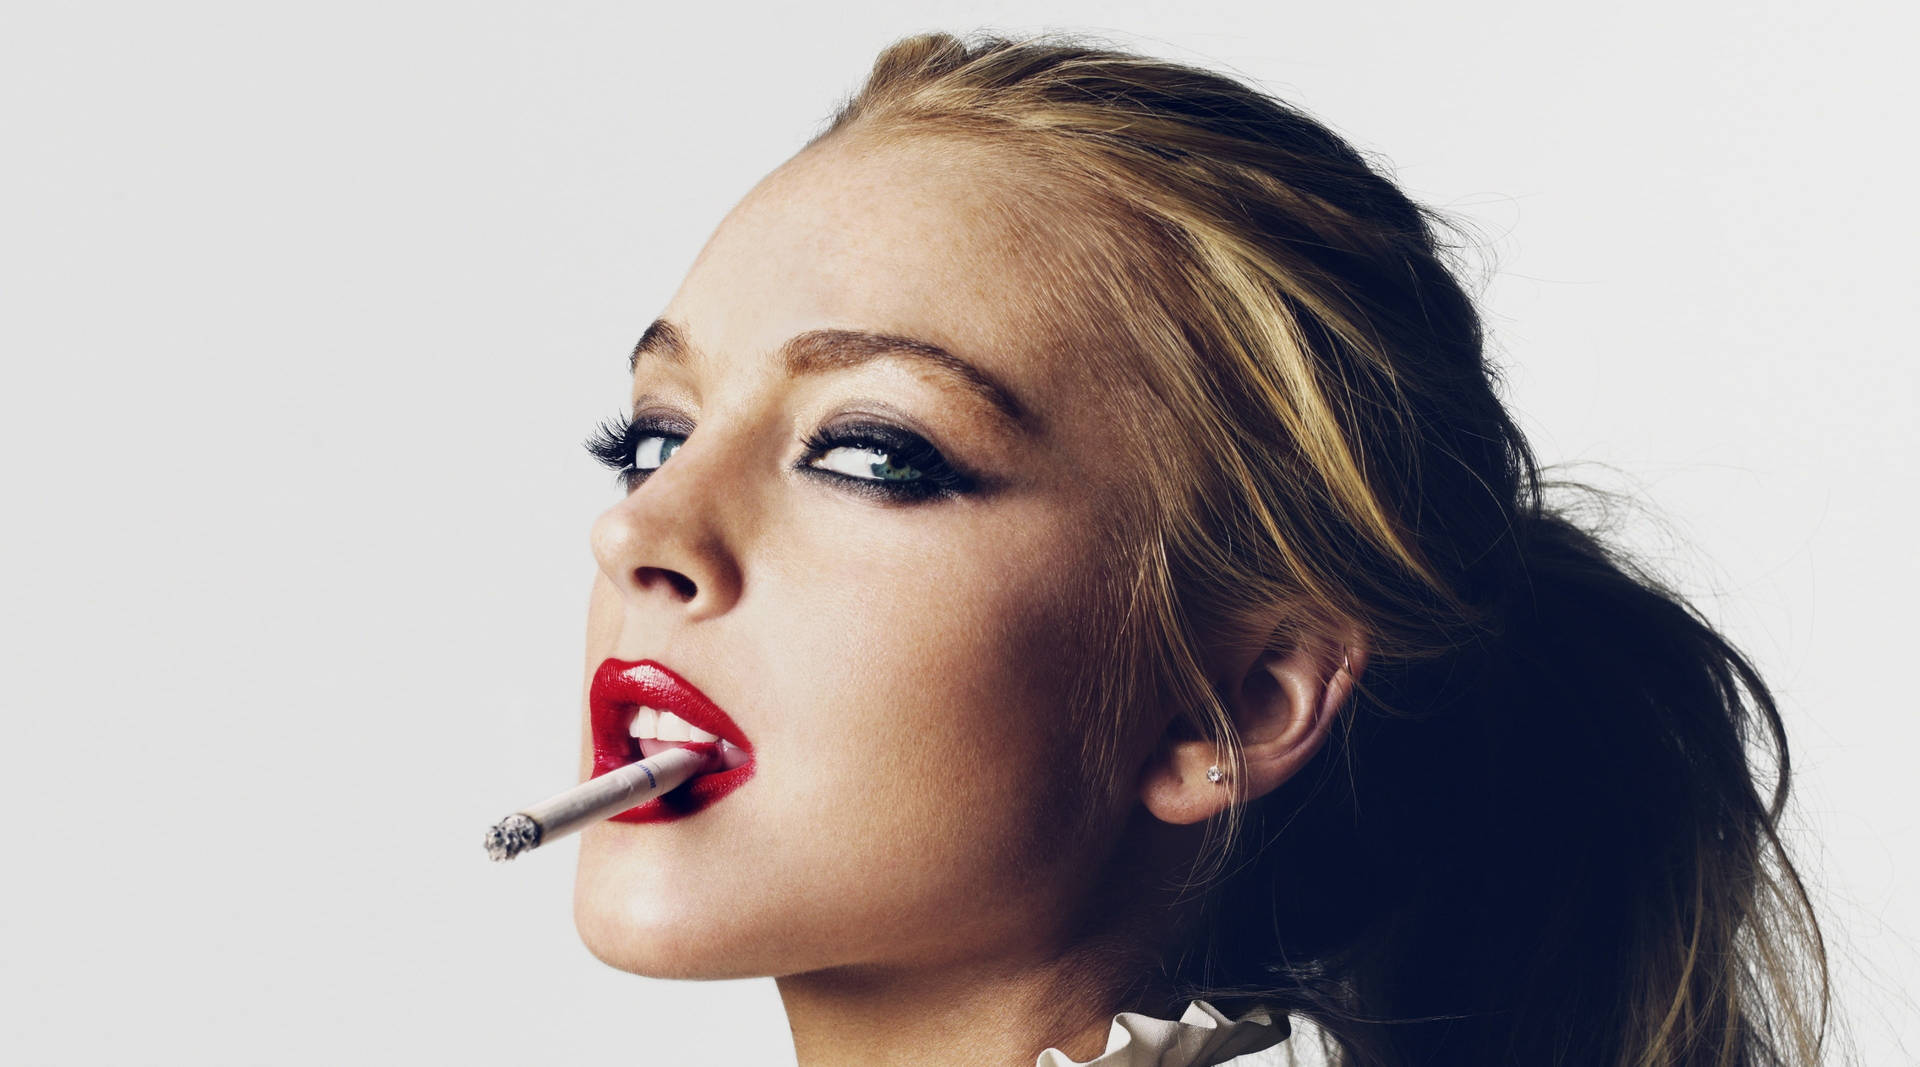 Lindsay Lohan Smoking